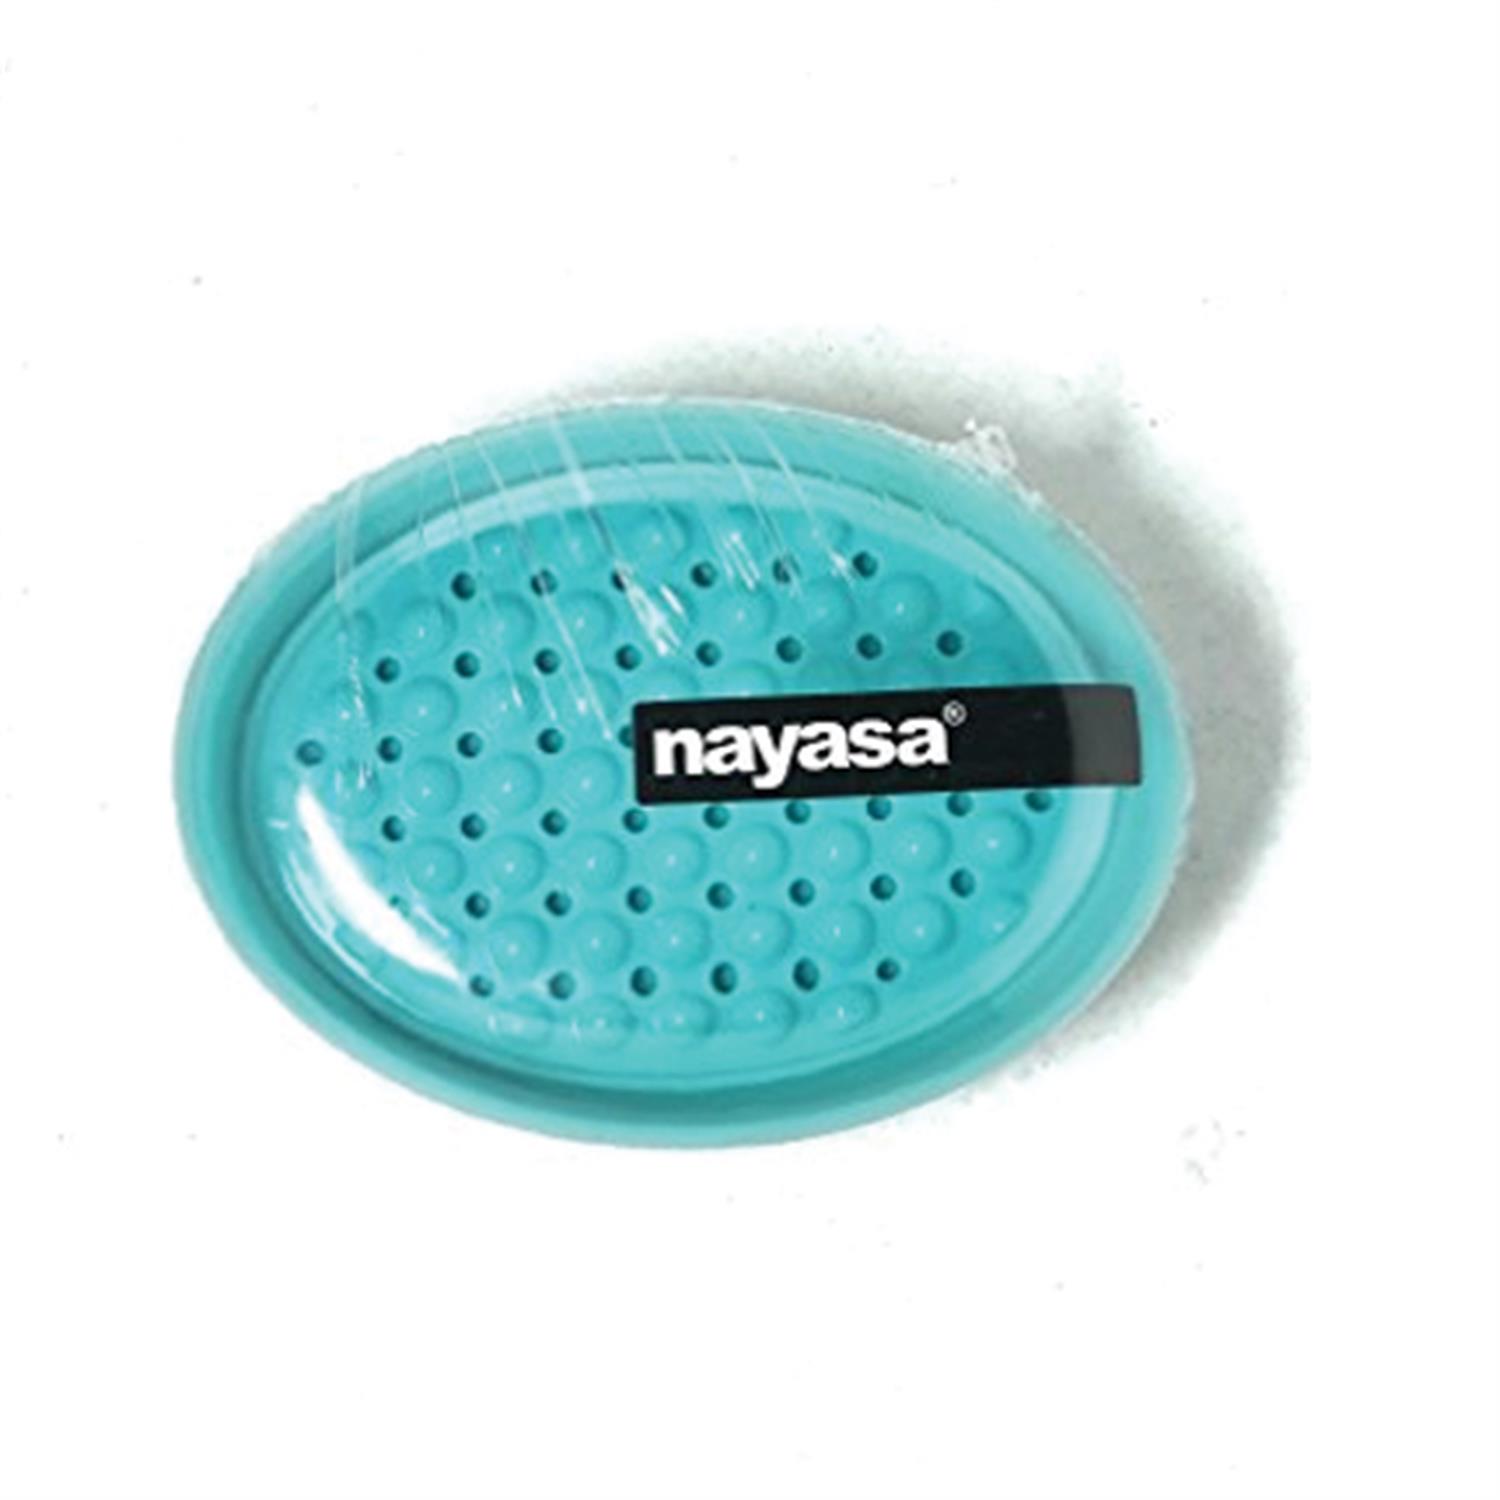 NAYASA OVAL BUBBLE SOAP CASE 1PC